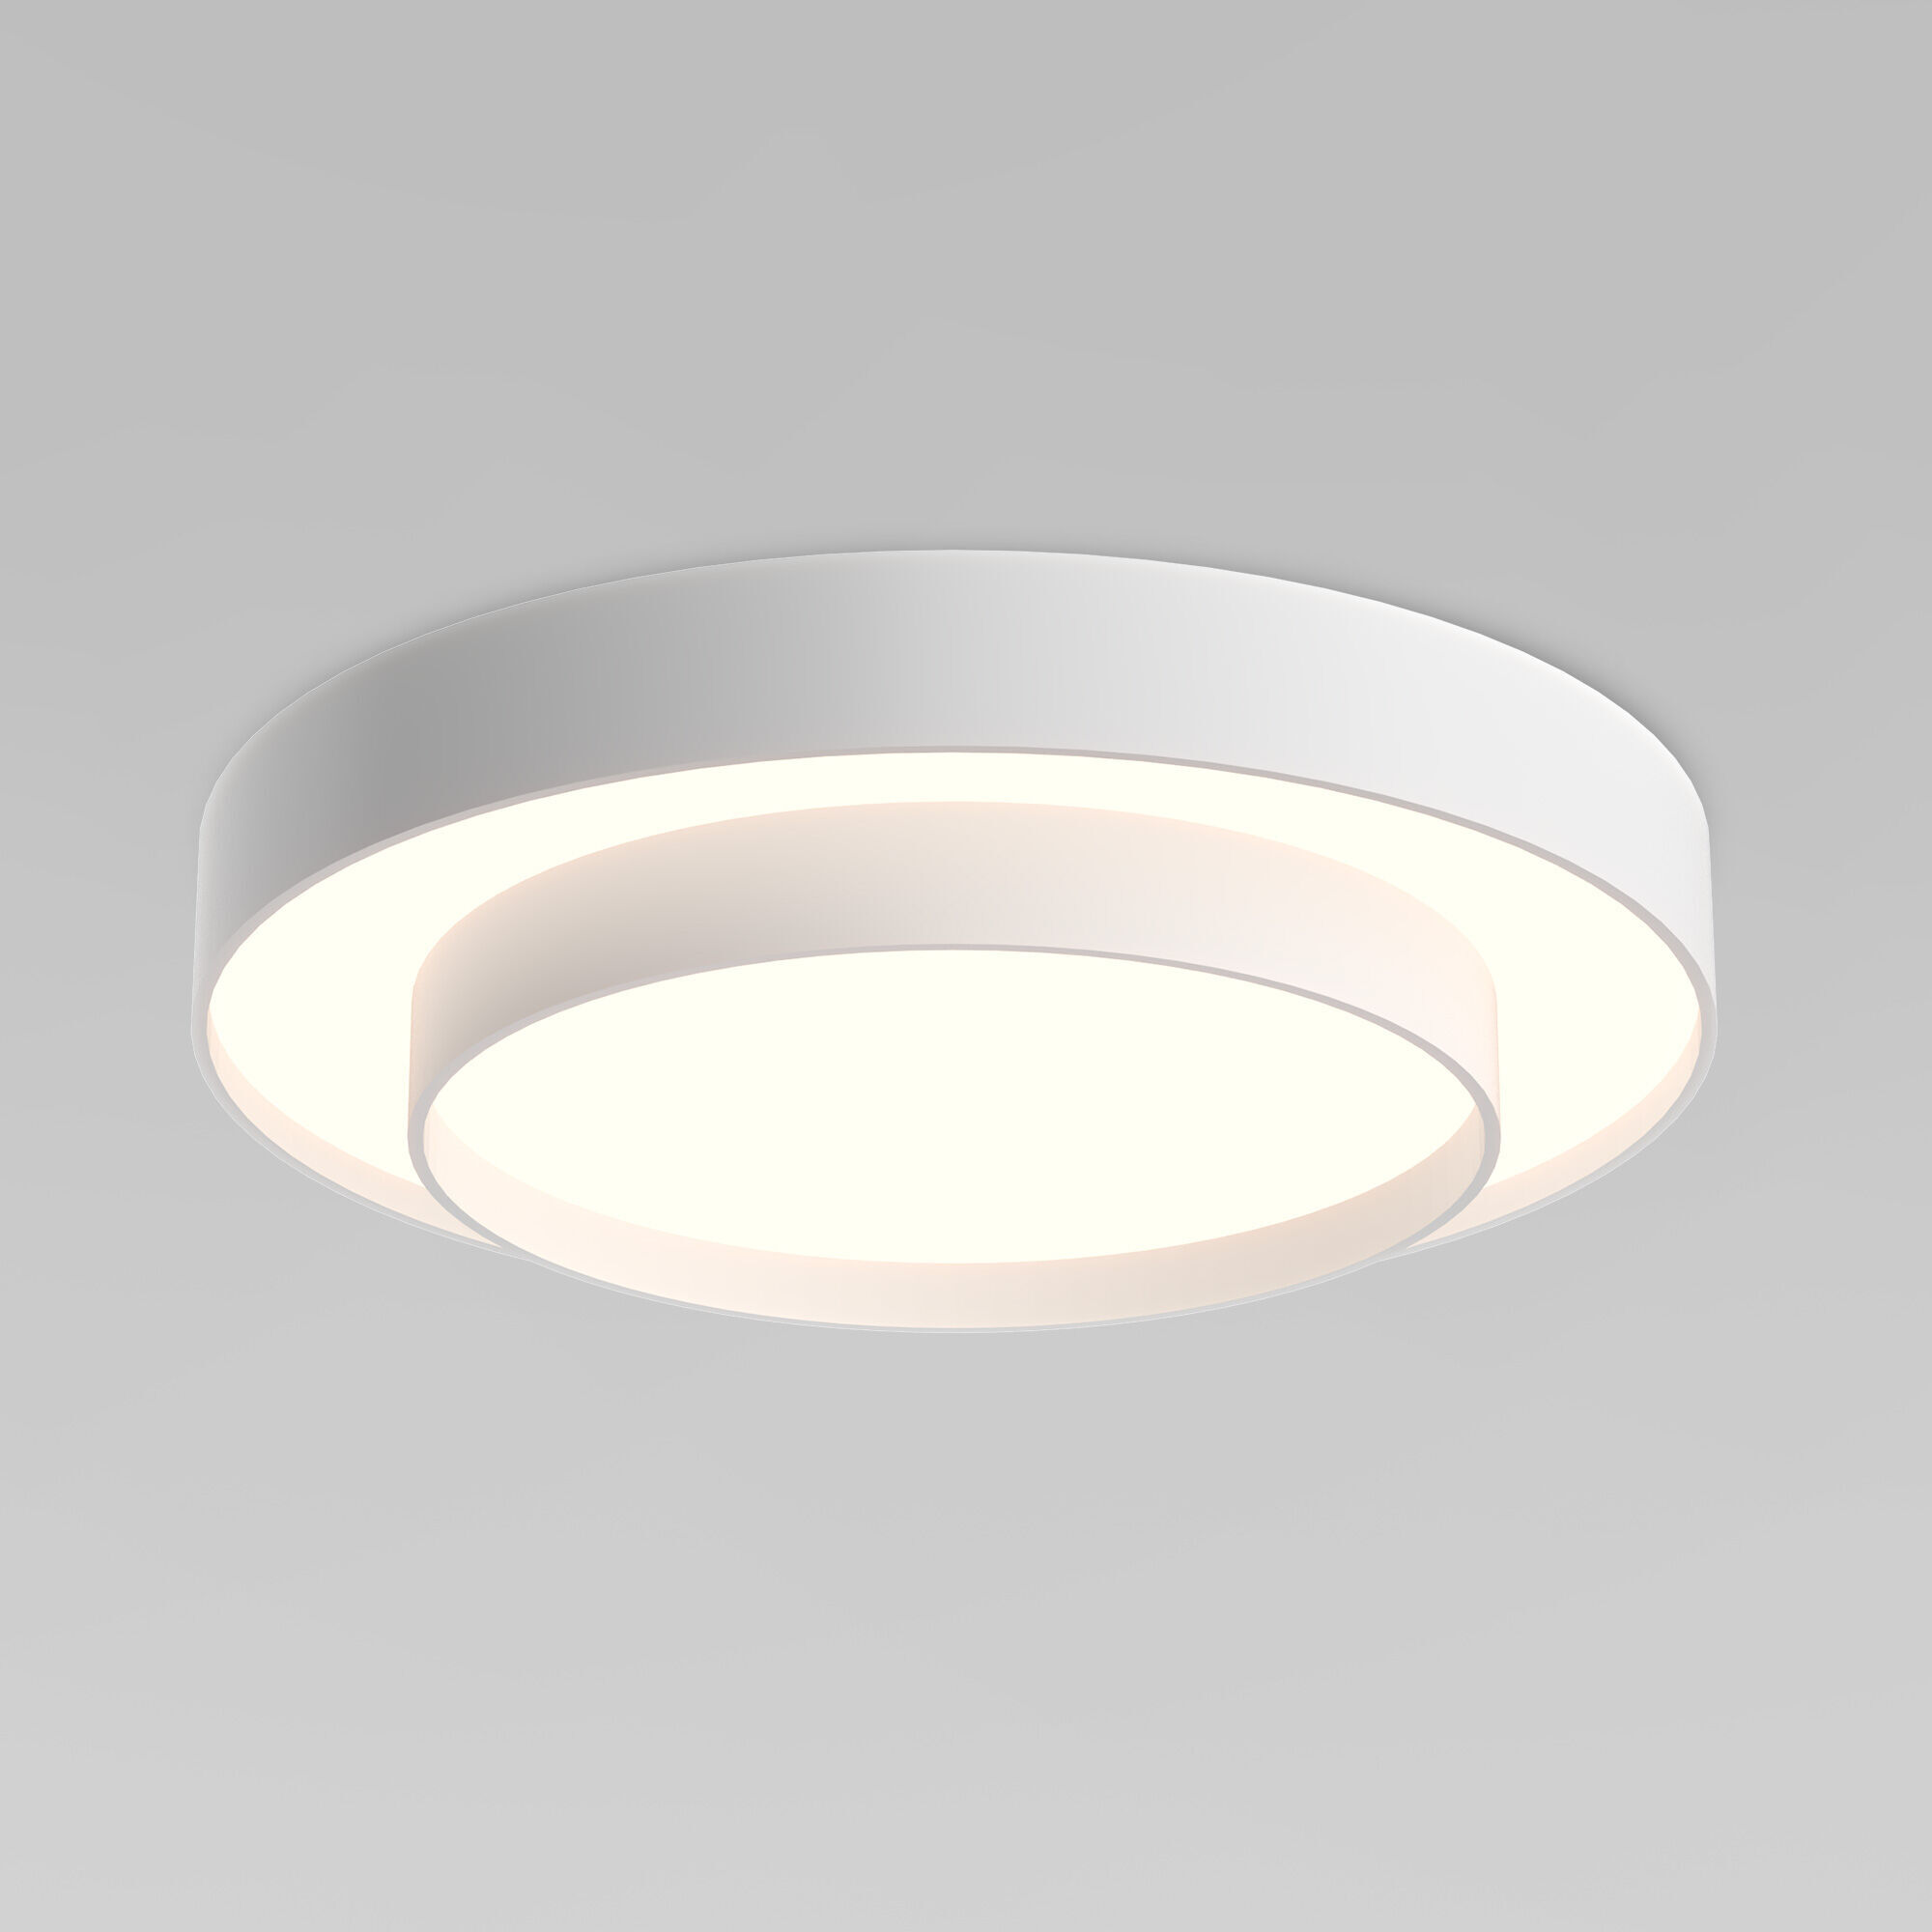 Потолочный светодиодный светильник с регулировкой яркости и цветовой температуры Eurosvet Force 90331/2 белый. Фото 1